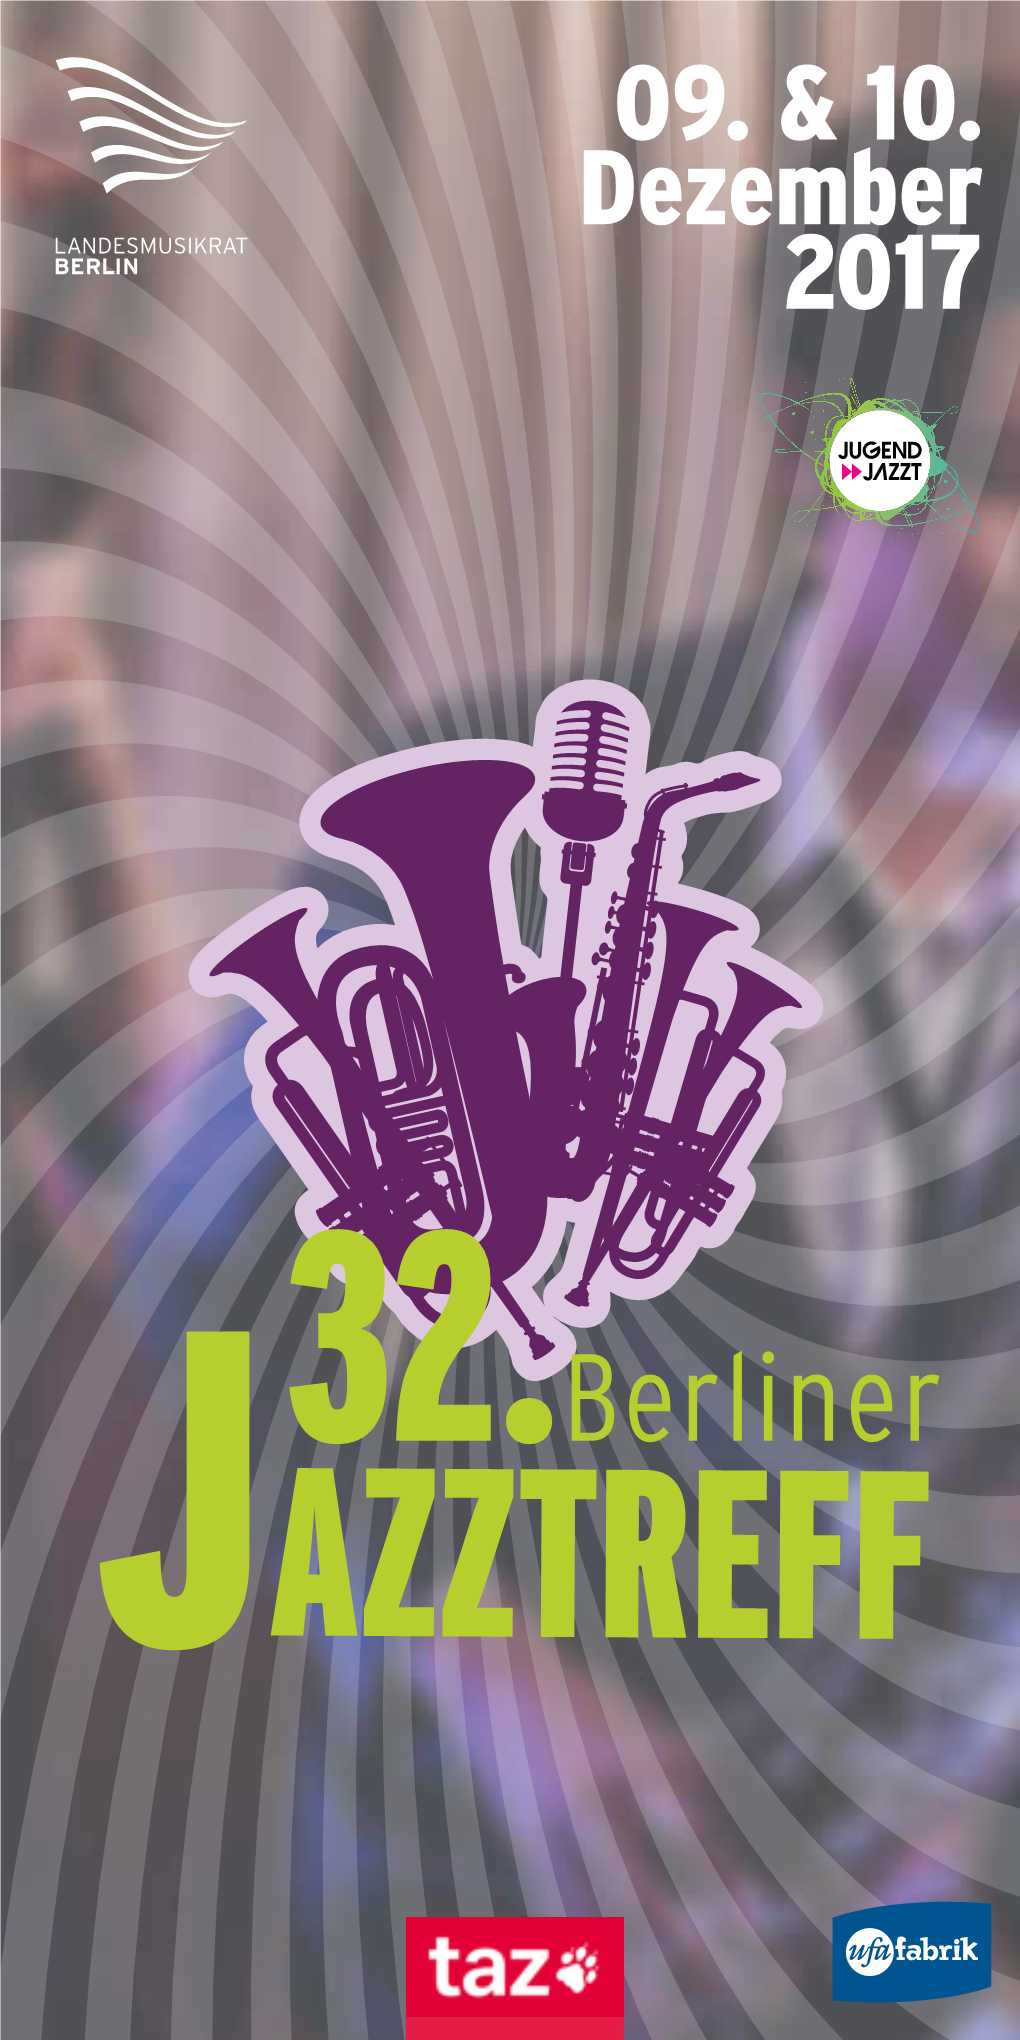 Berliner JAZZTREFF Tazplan Jazz 105X210.Qxp Layout 1 22.11.16 11:08 Seite 1